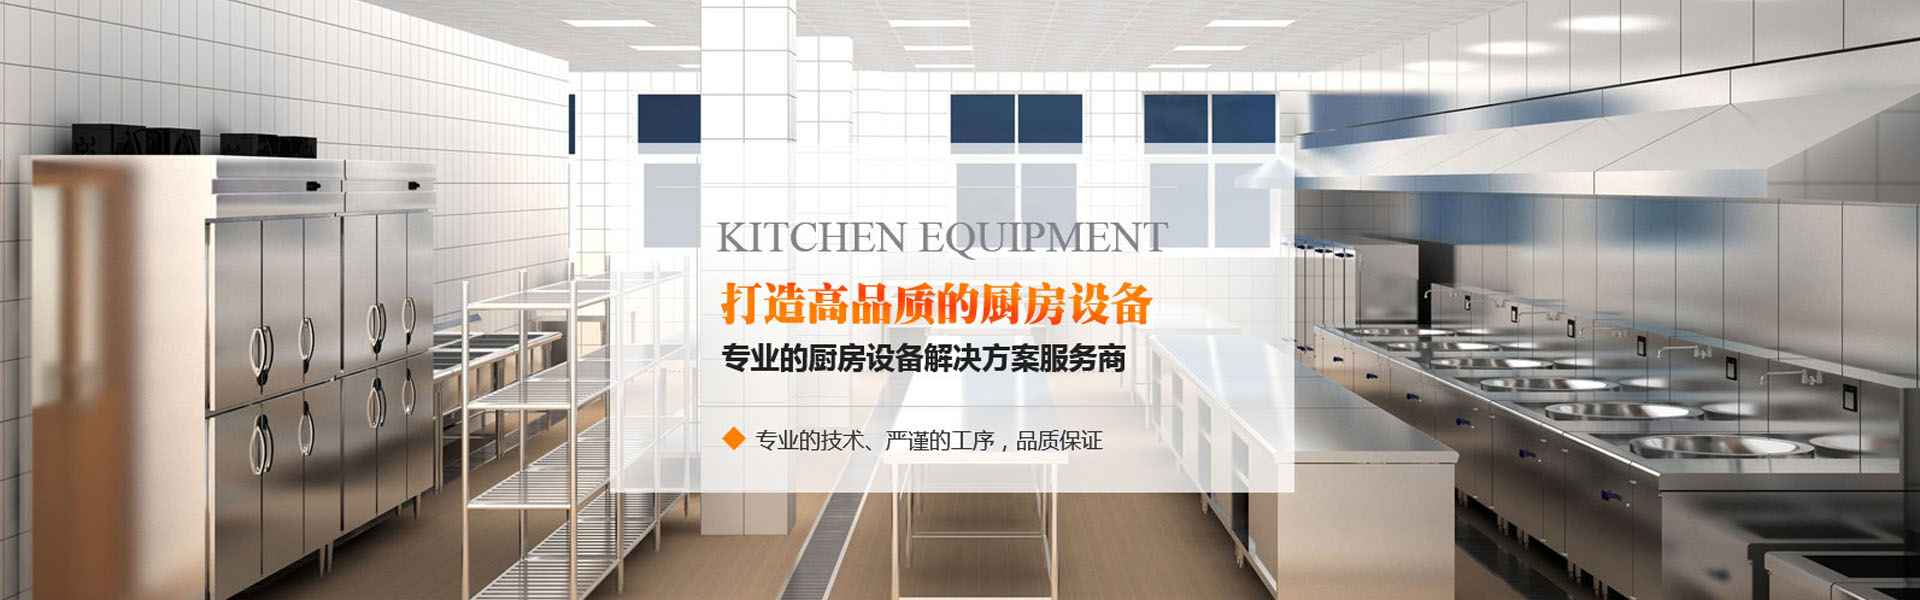 惠州廚房設備